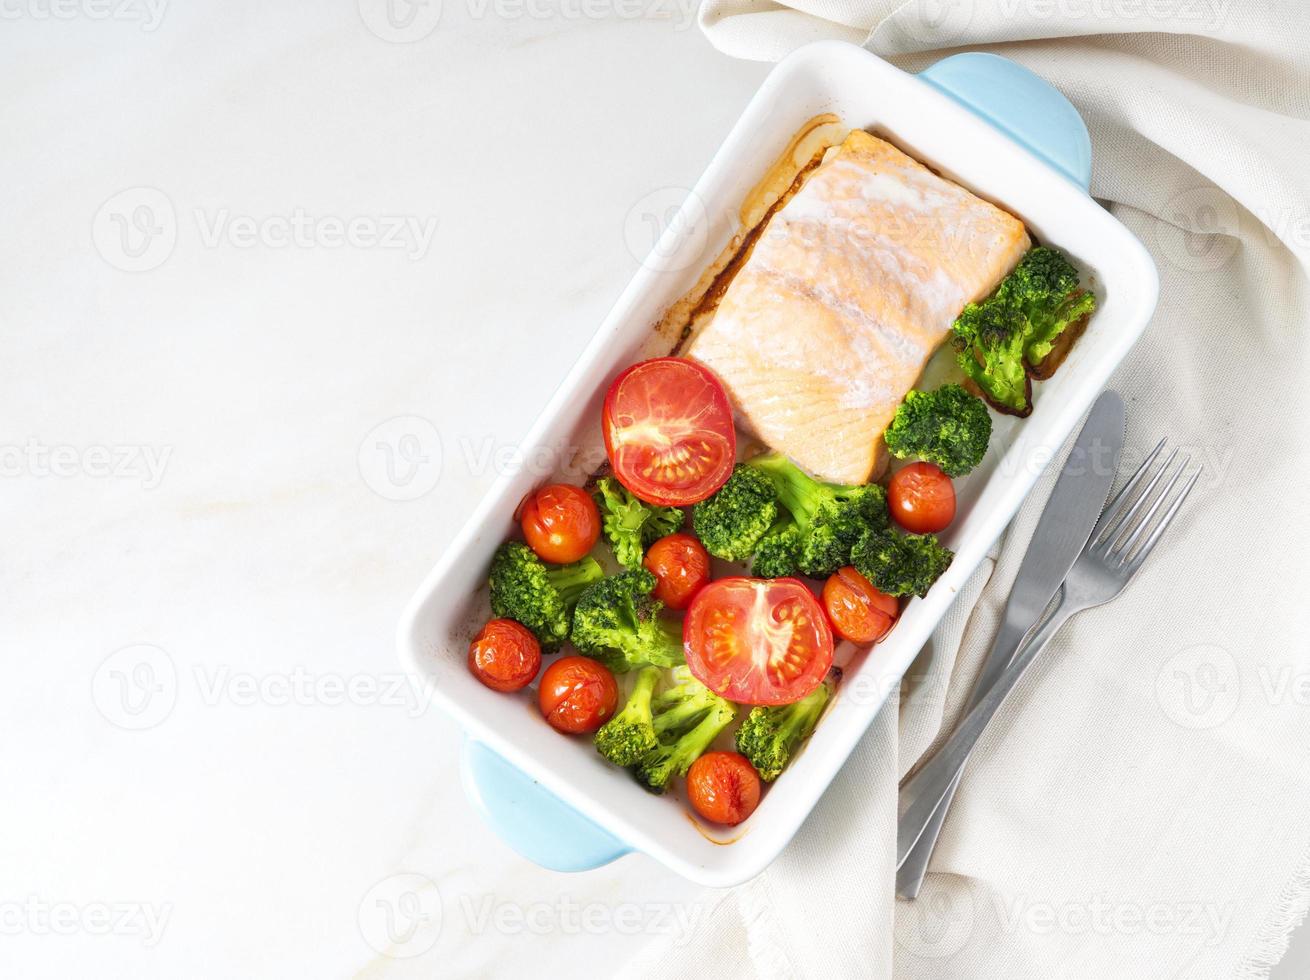 salmone di pesce al forno con verdure - broccoli, pomodori. cibo dietetico sano, sfondo in marmo bianco, vista dall'alto. foto